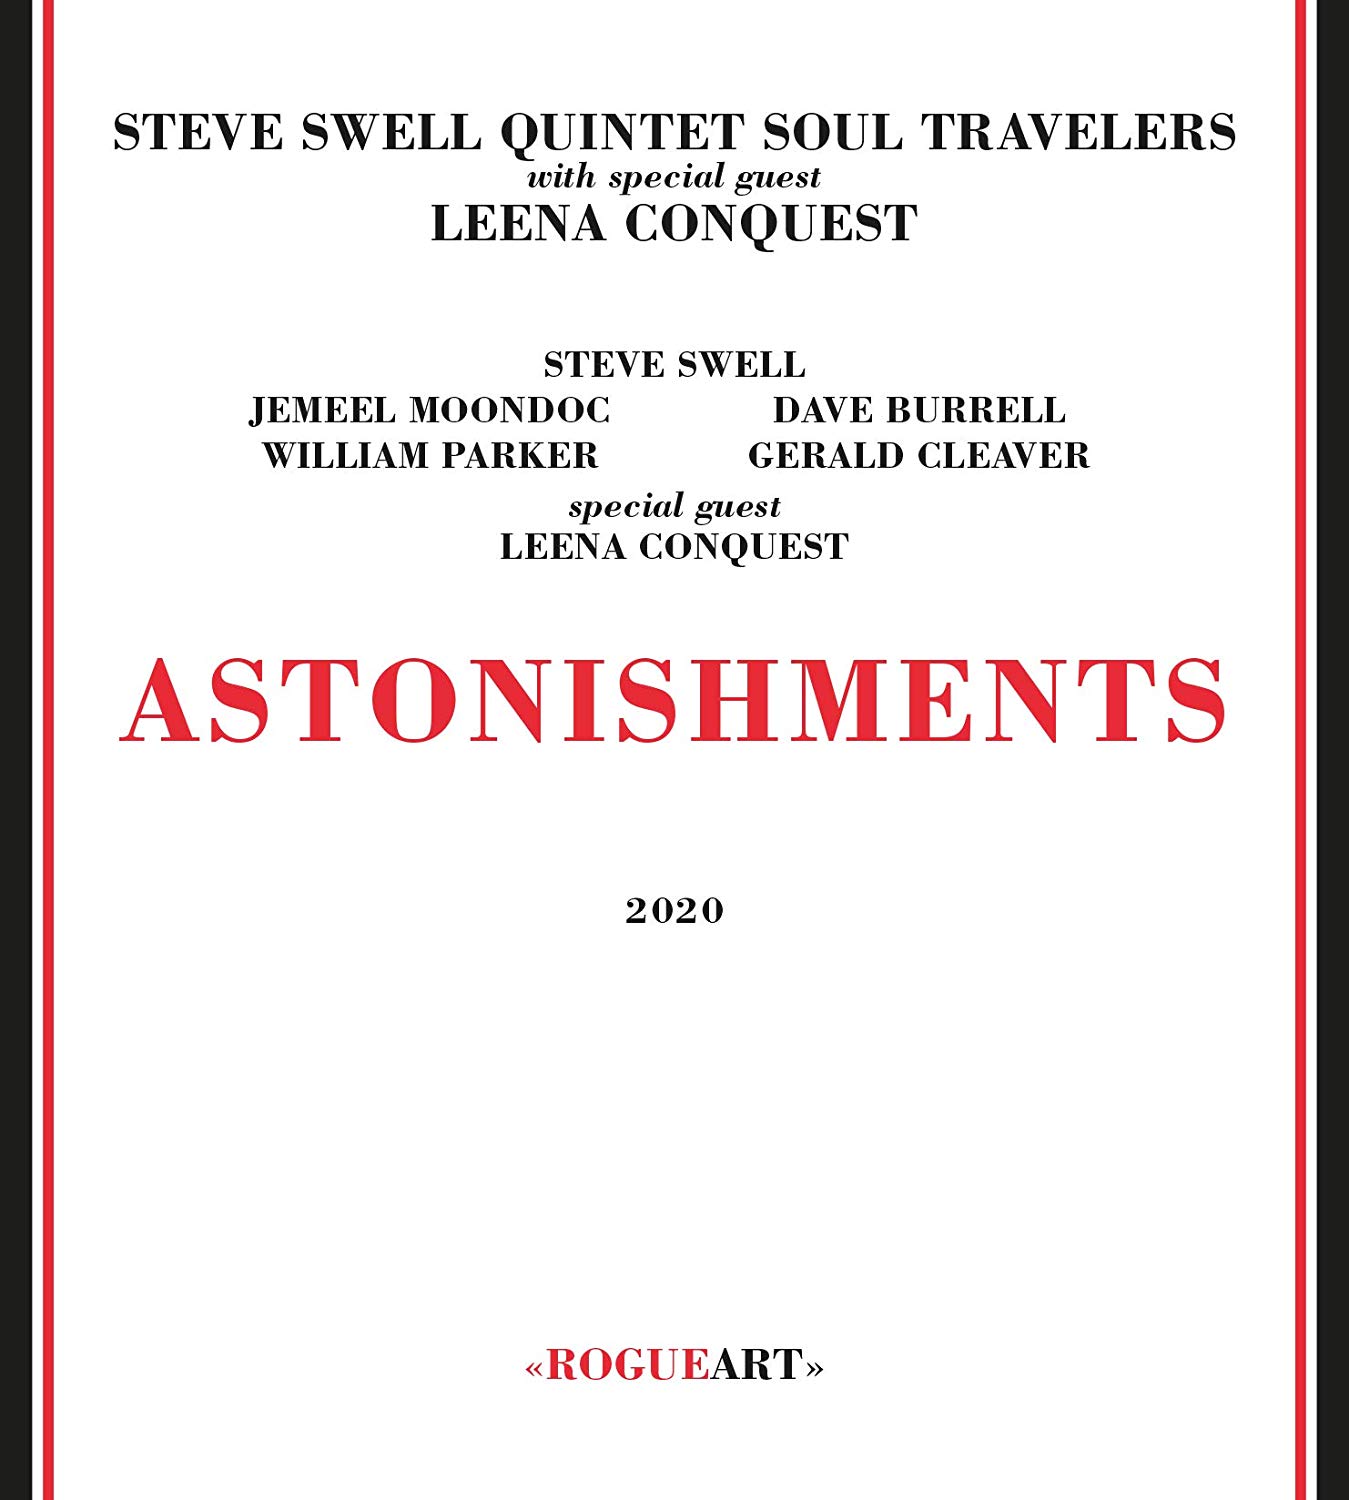 STEVE SWELL - Steve Swell Quintet Soul Travelers : Astonishments cover 